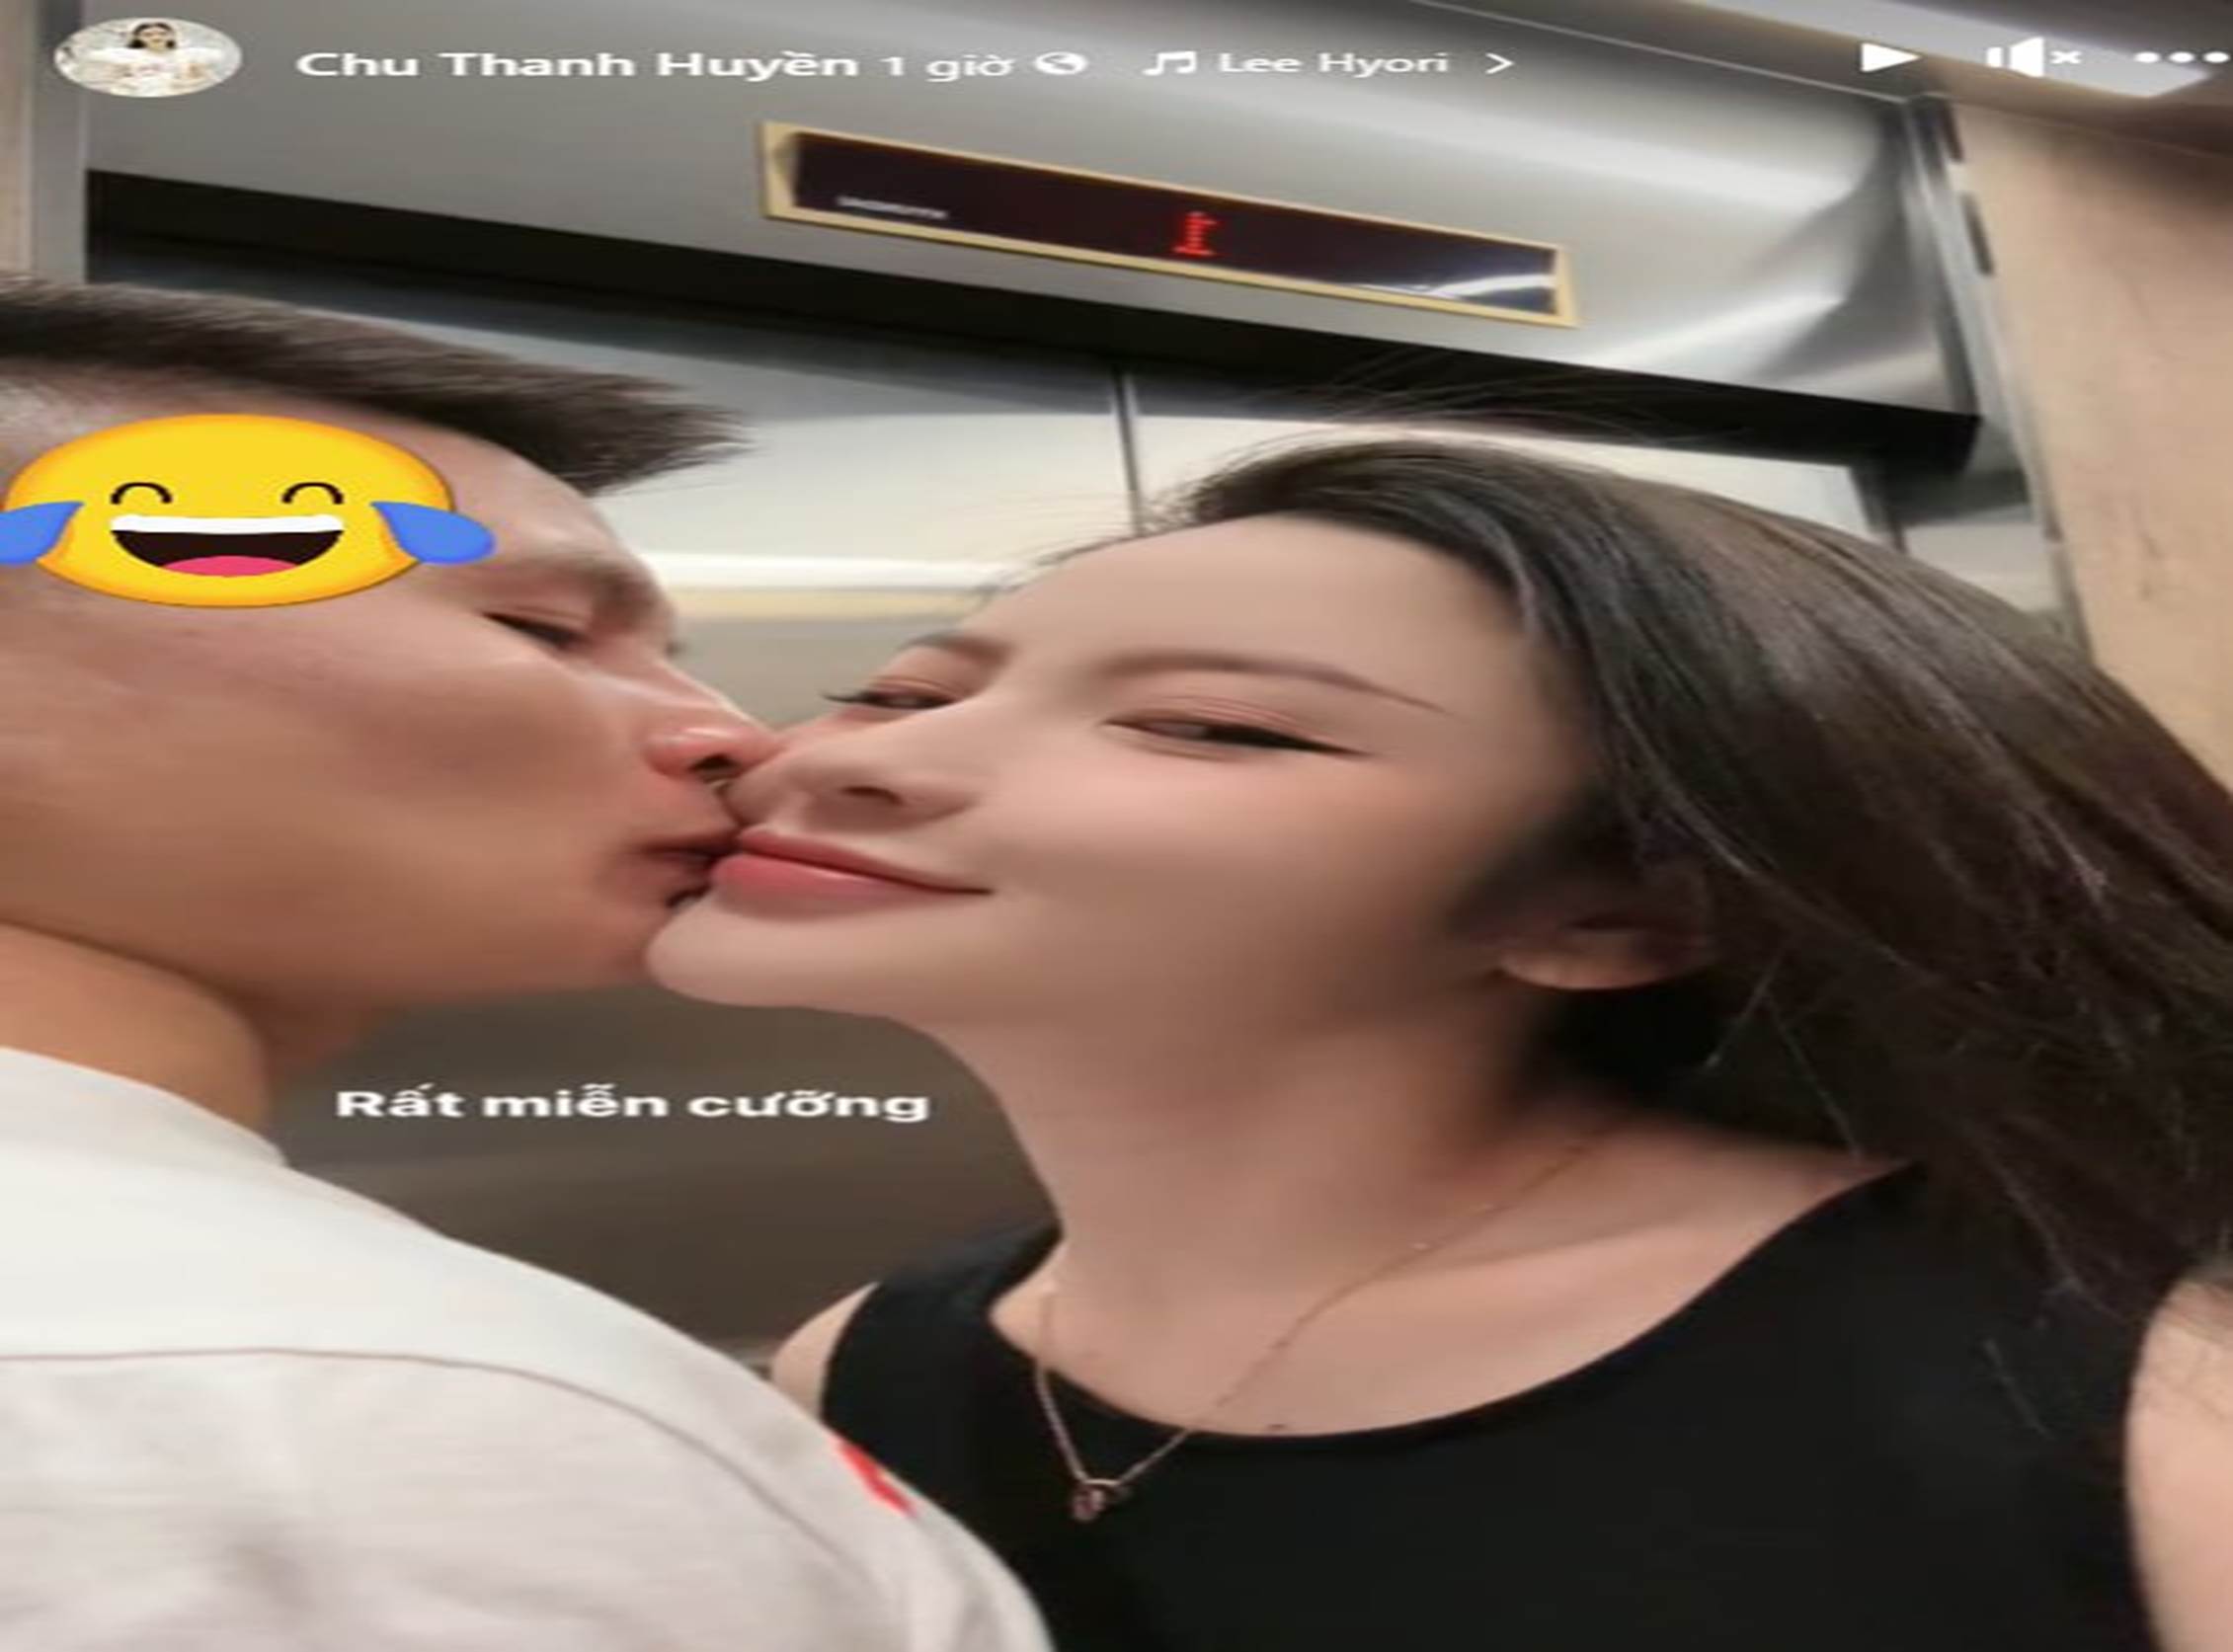 Quang Hải miễn cưỡng hôn vợ trong thang máy, dáng vẻ mẹ bầu Chu Thanh Huyền chuẩn bị cho ngày nuôi con mọn gây chú ý-1